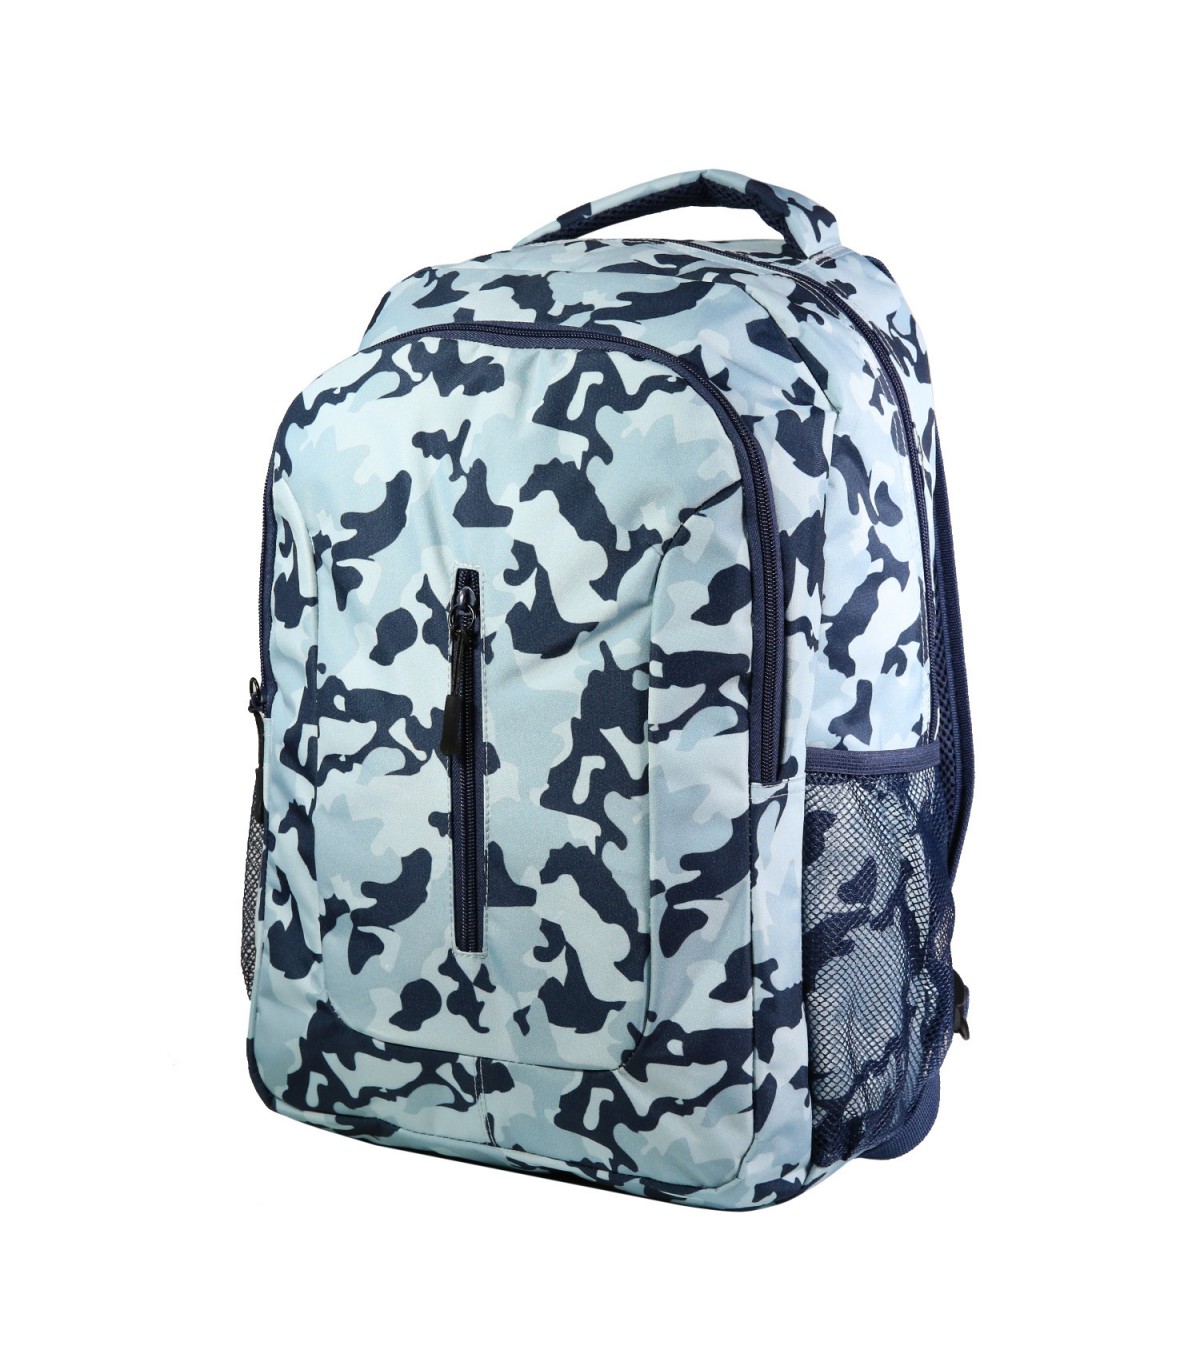 Set de sac à dos, sac gym et trousse Bagtrotter Bleu Camouflage